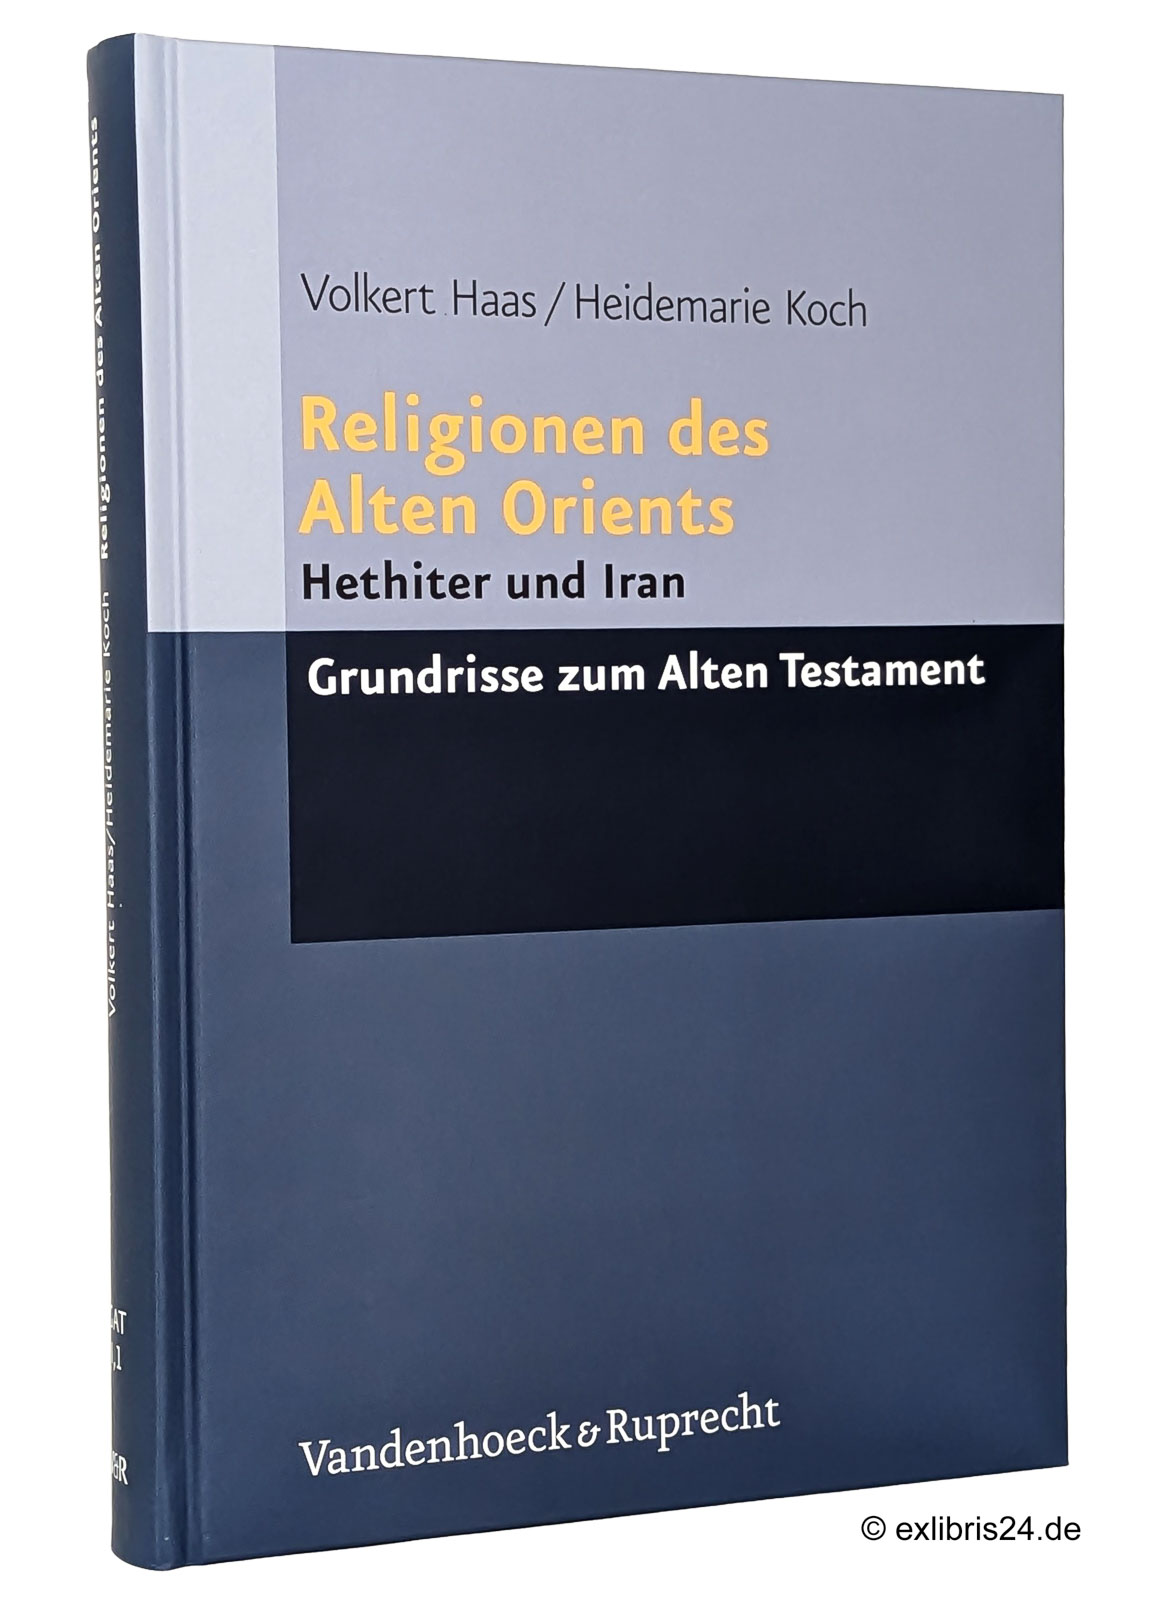 Religionen des Alten Orients, Teil 1: Hethiter und Iran : (Reihe: GAT - Grundrisse zum Alten Testament, Band 1,1) - Haas, Volkert; Koch, Heidemarie